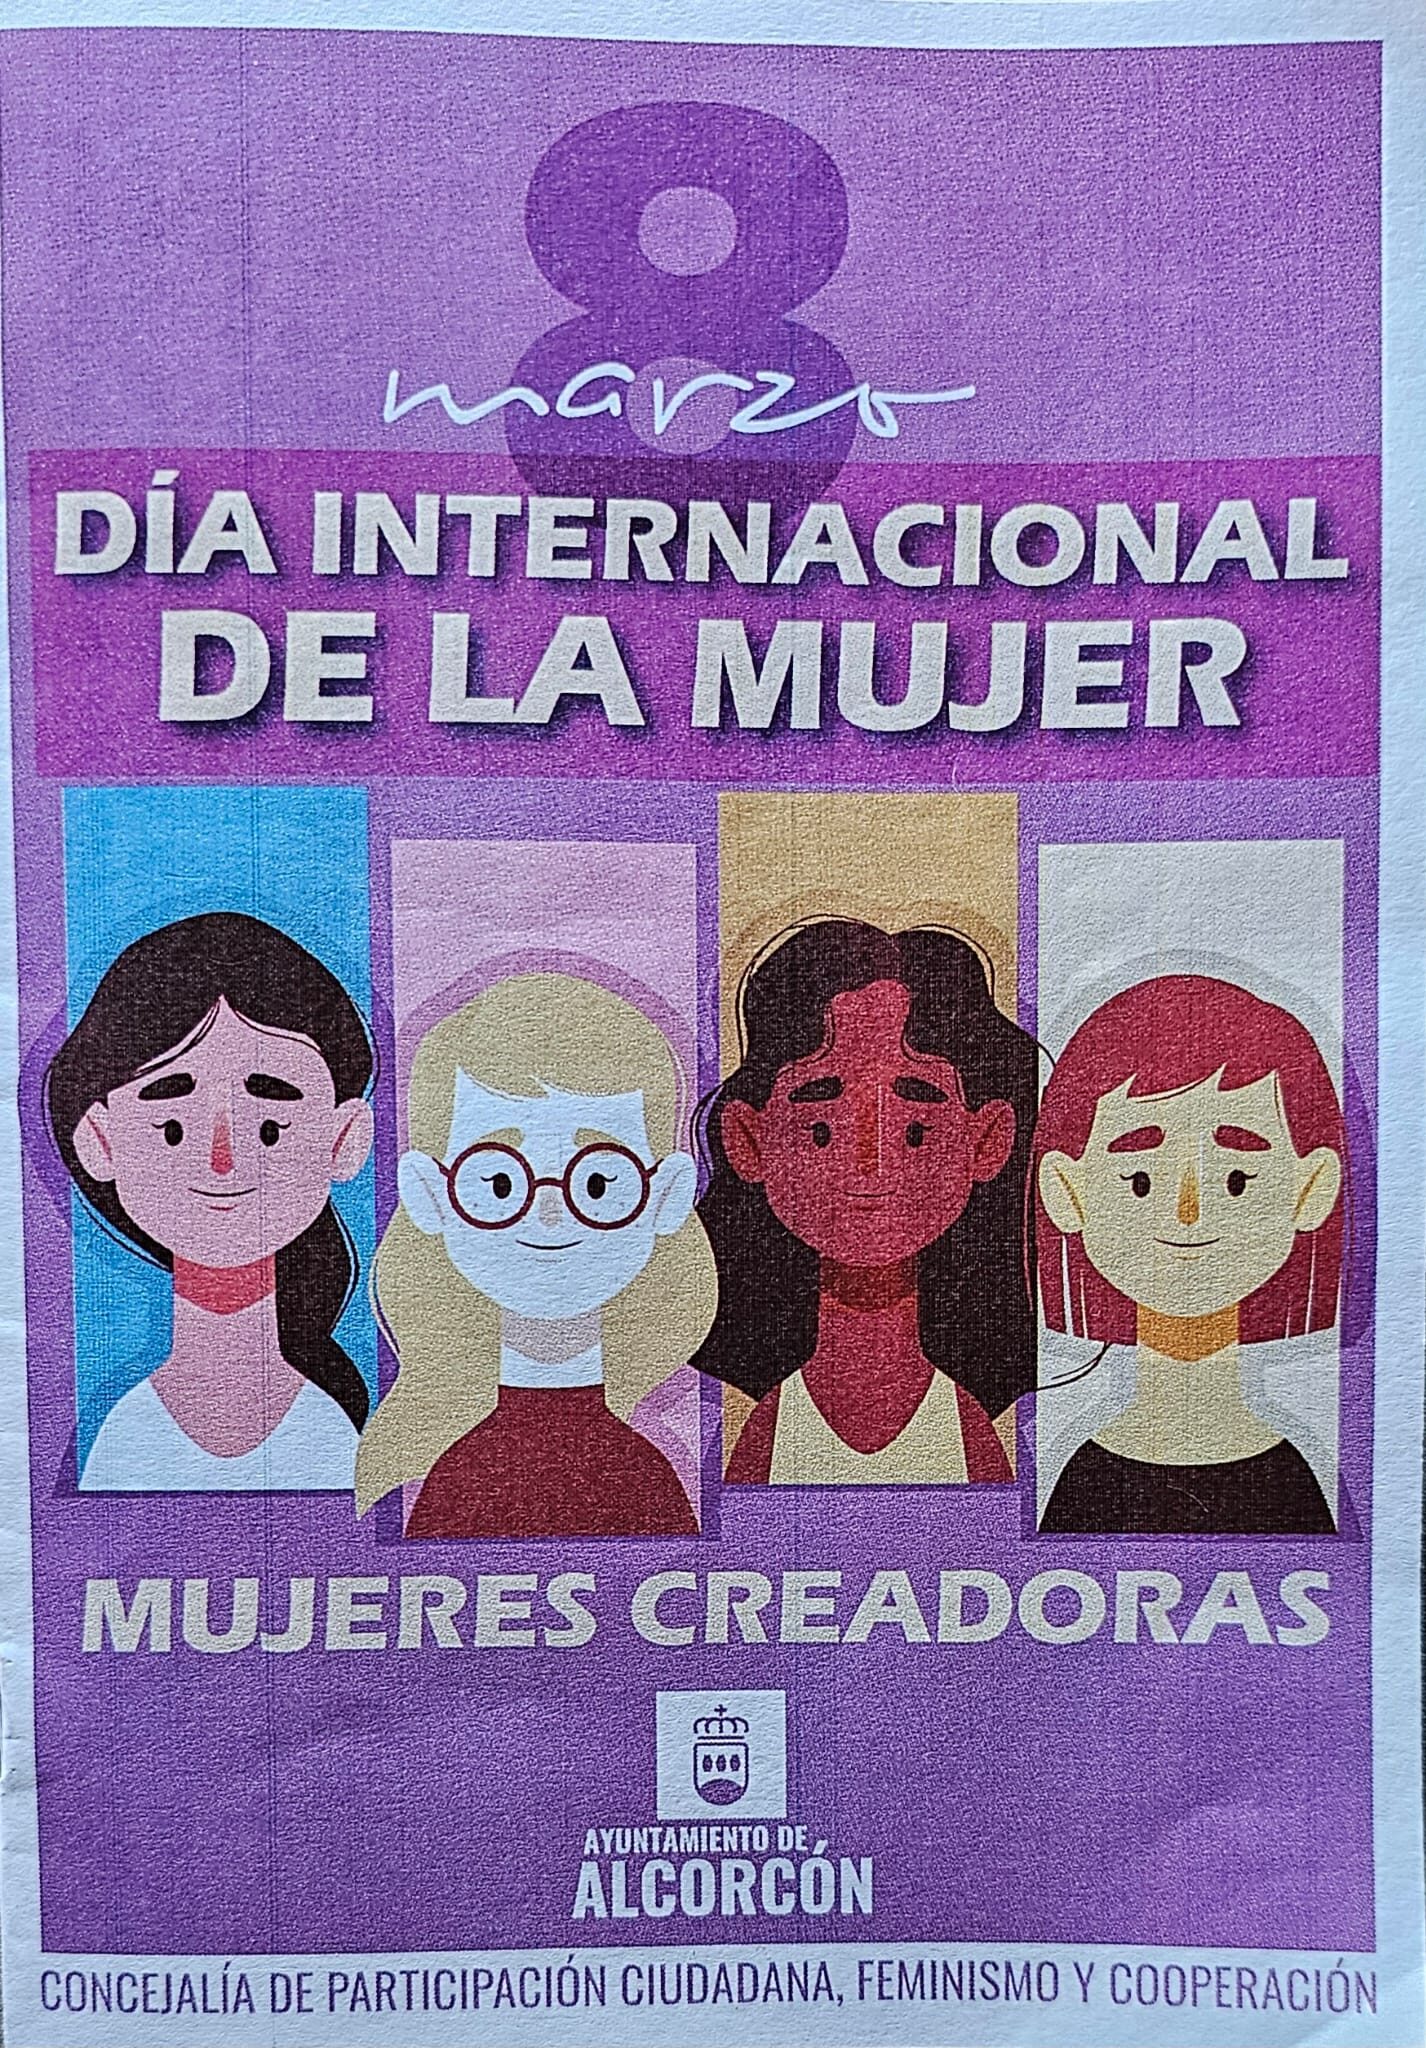 El Día Internacional de la Mujer llega a Alcorcón con actividades a realizar el 8M